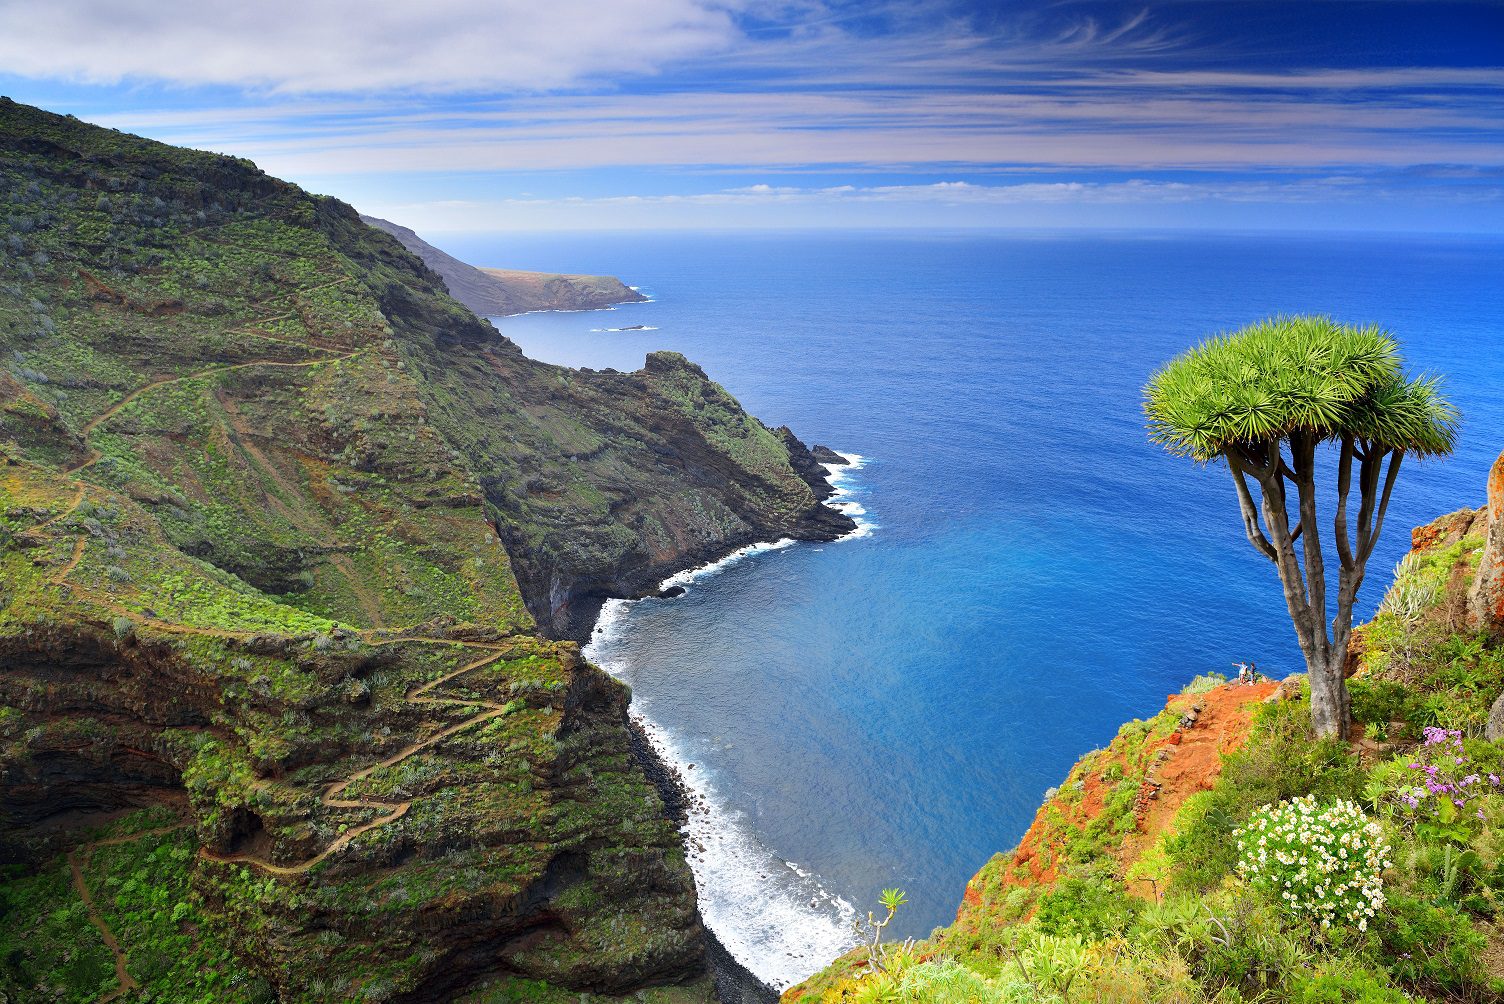 La isla de La Palma: paraíso del senderismo